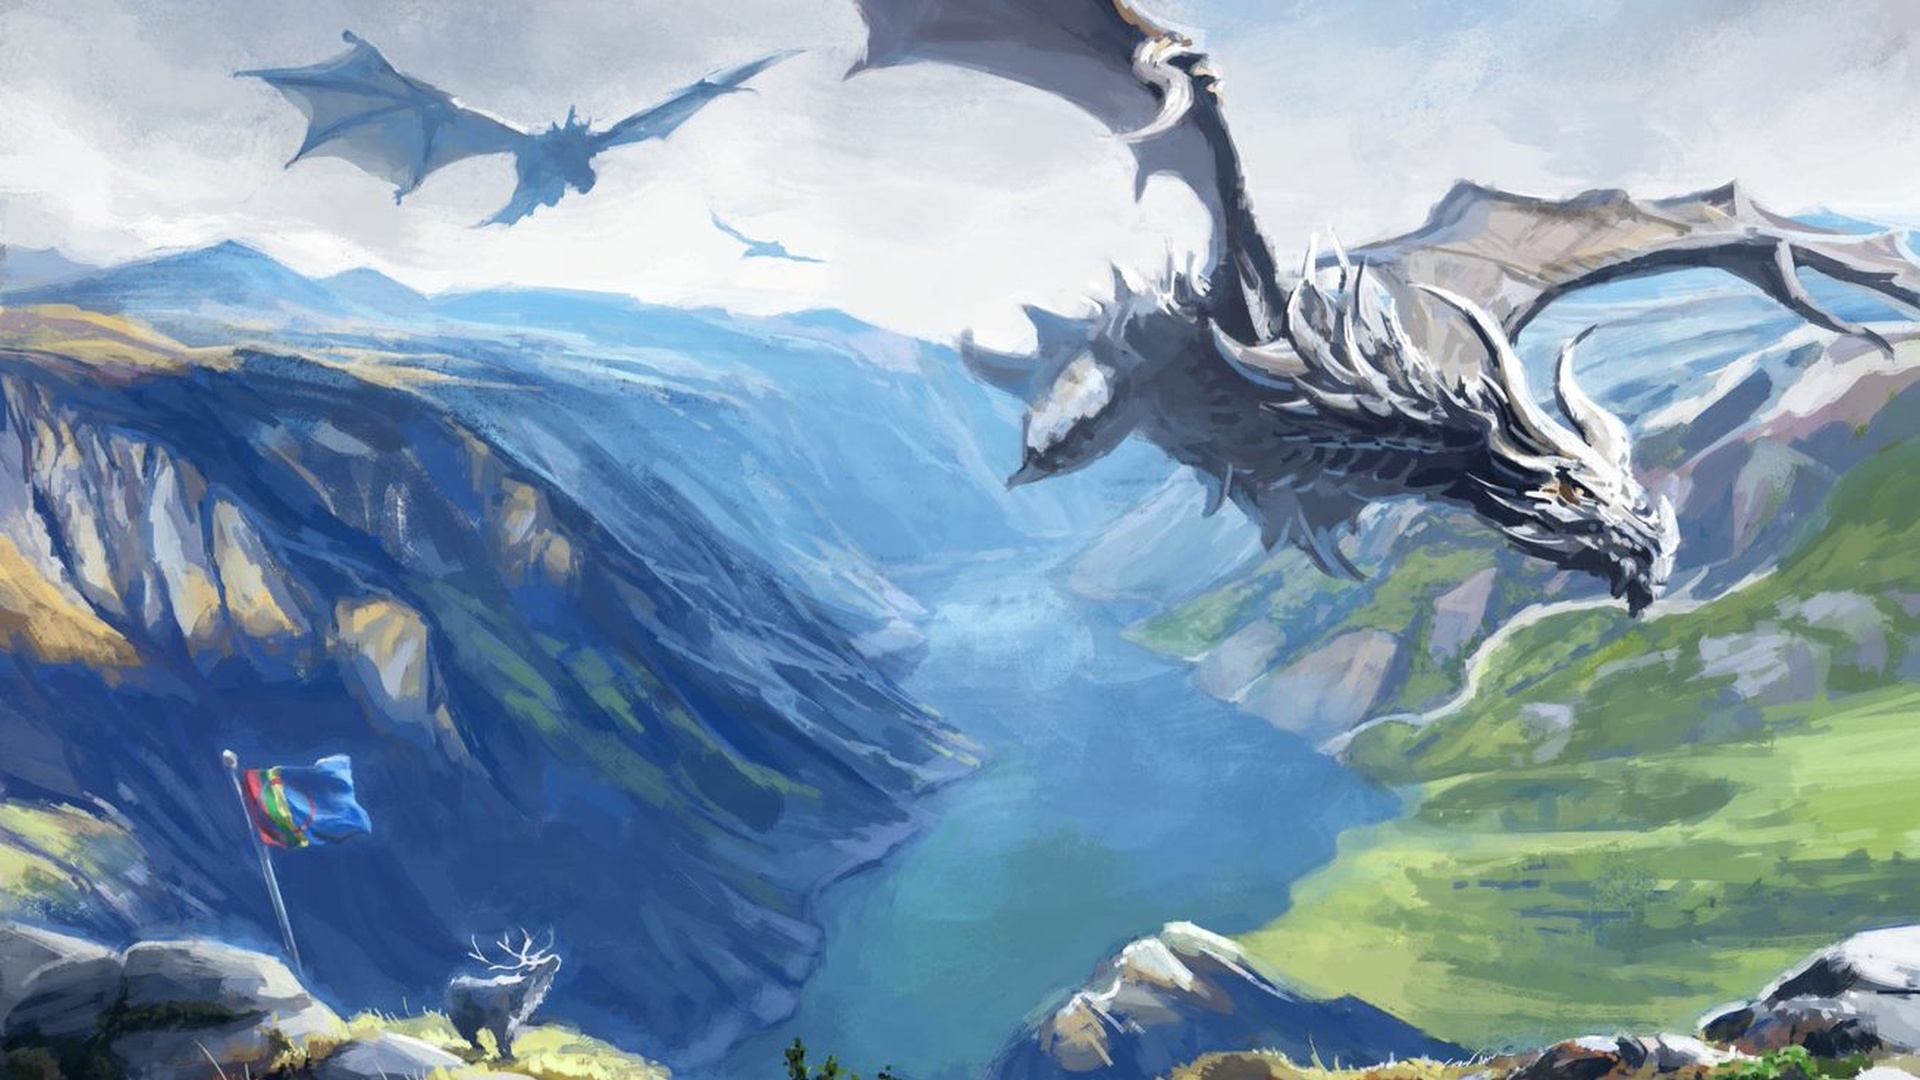 Una imatge d'uns dracs d'Skyrim planant per sobre d'un barranc mentre un alce es troba al costat de la bandera sami